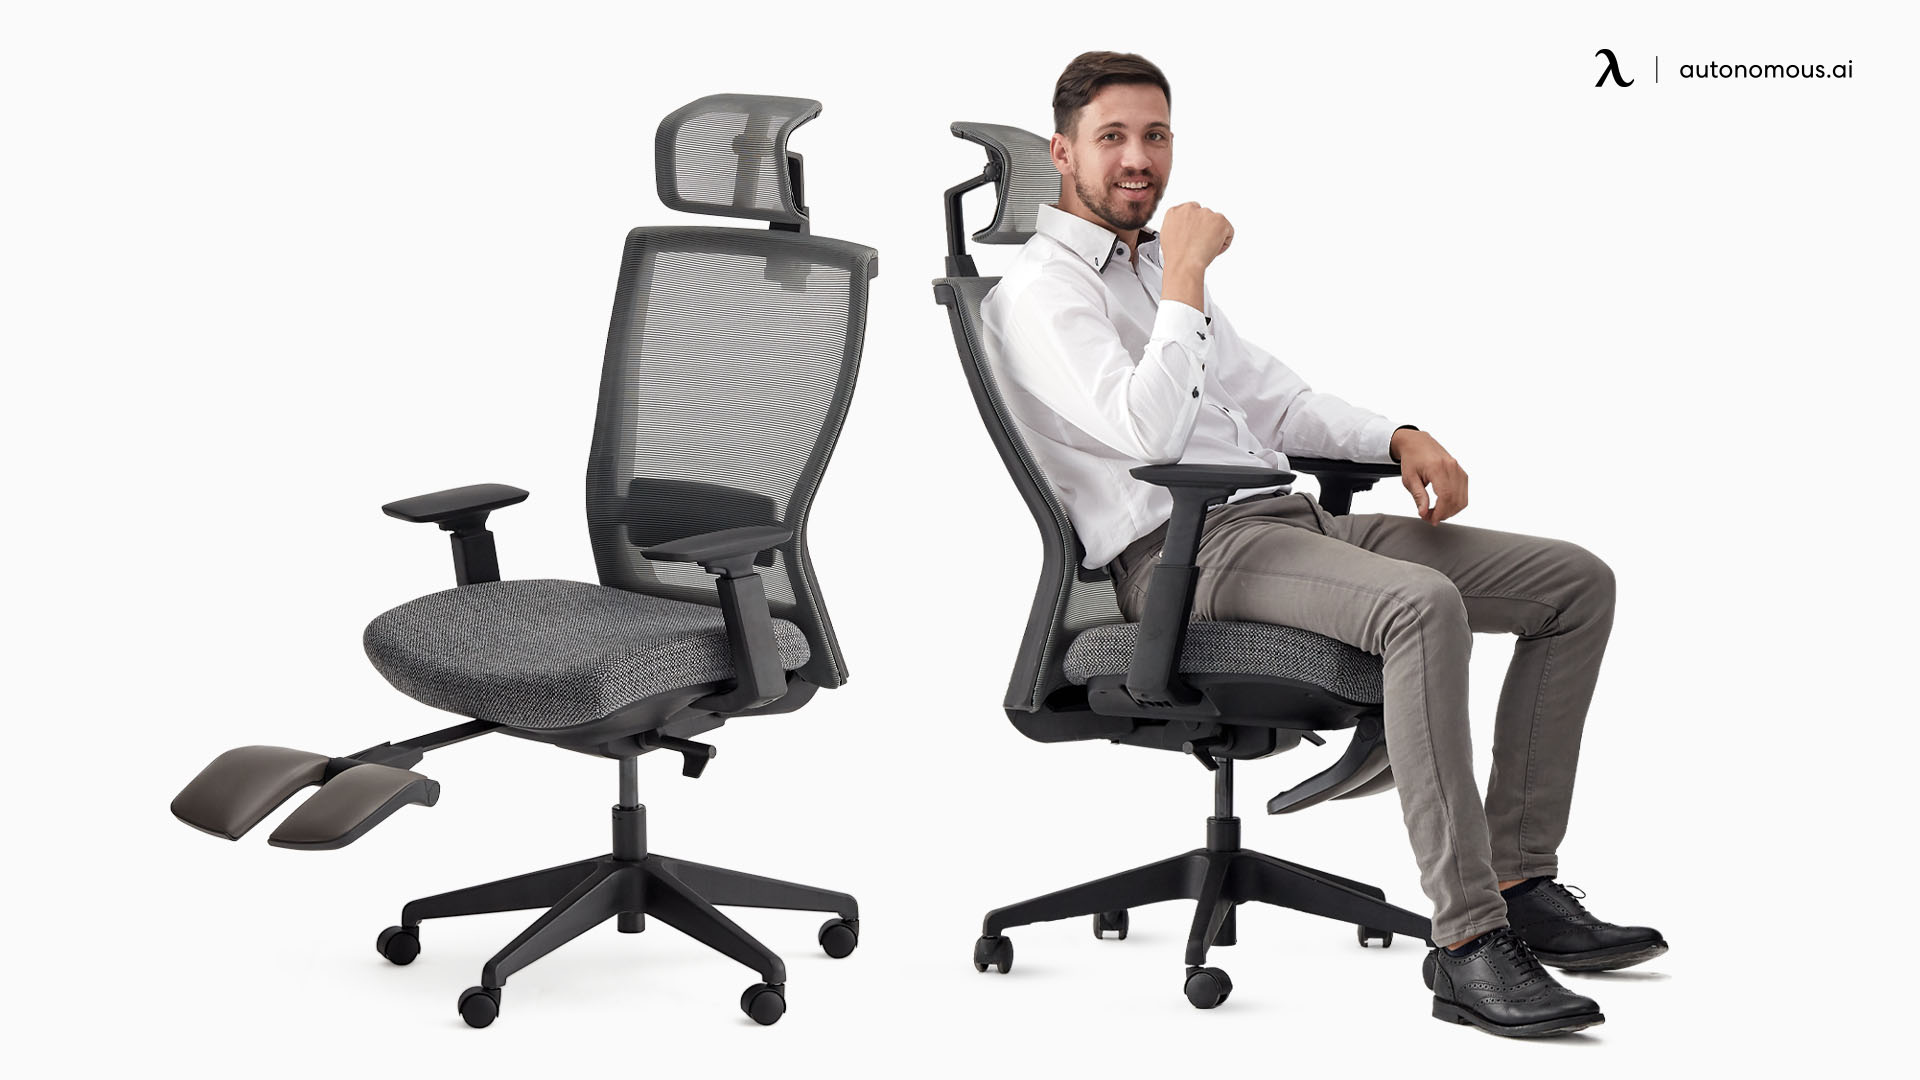 ErgoChair Recline grey desk chair